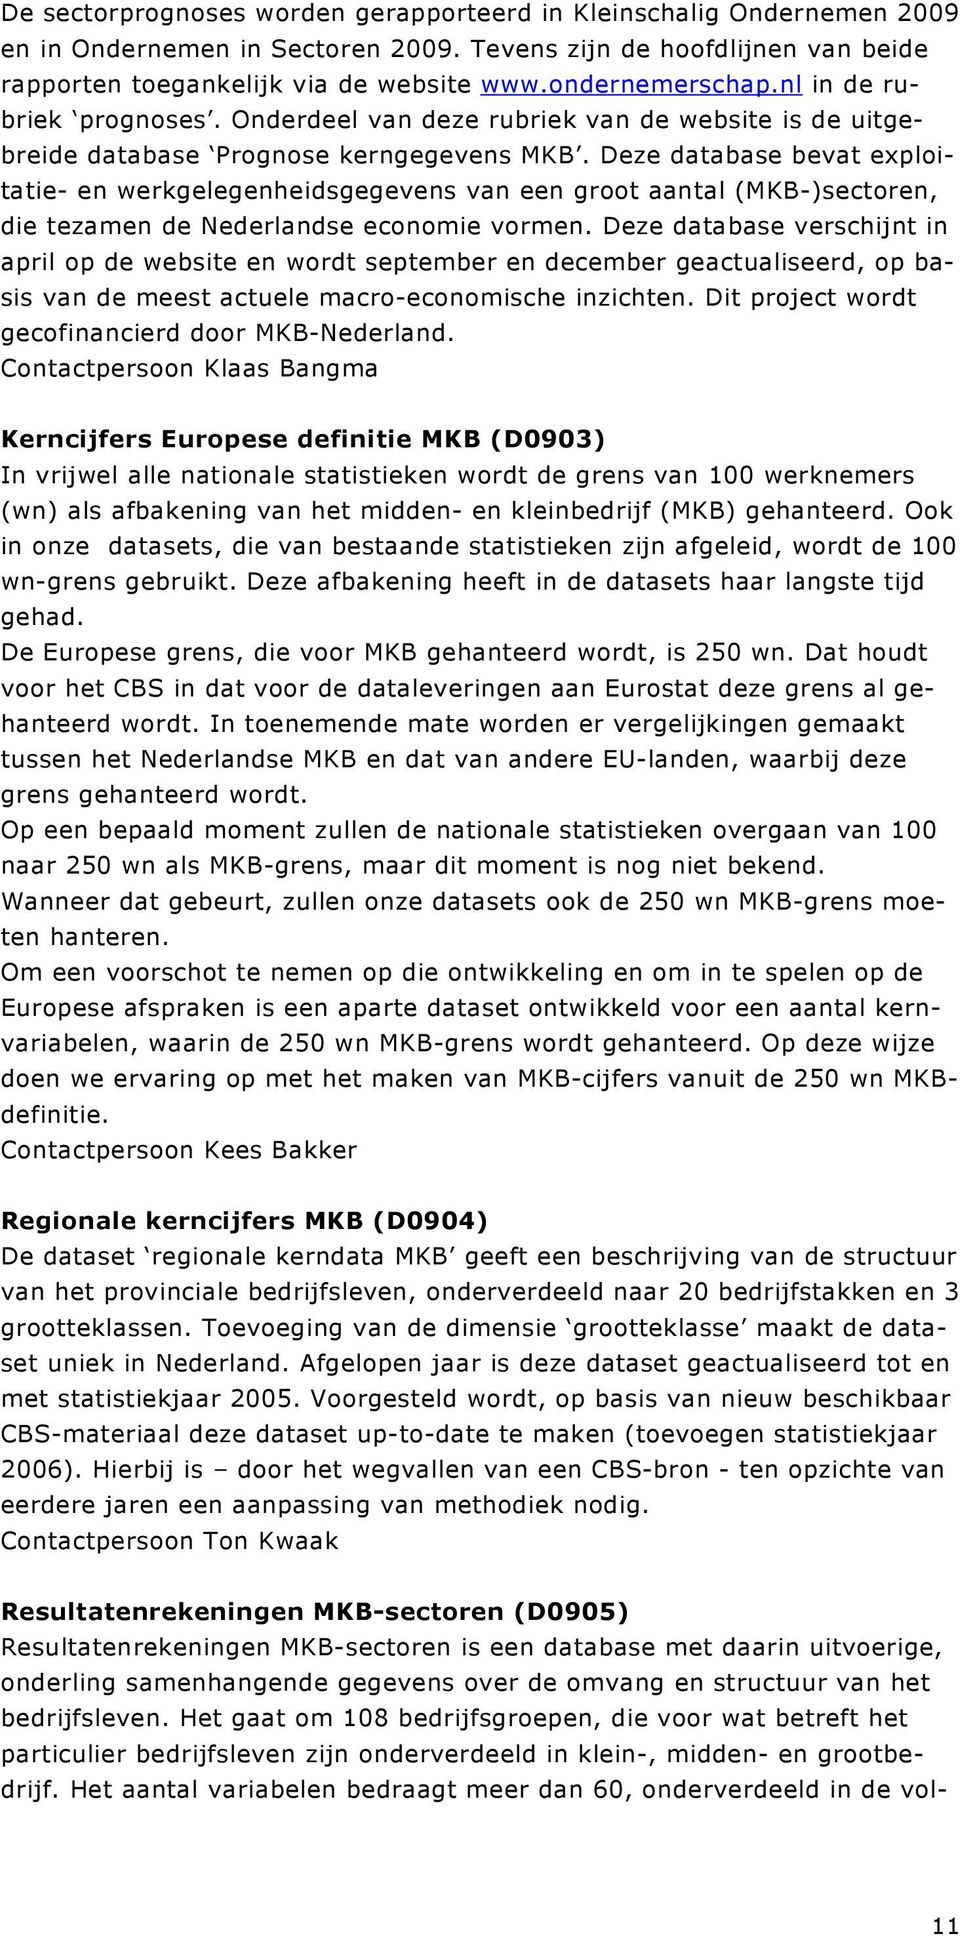 Deze database bevat exploitatie- en werkgelegenheidsgegevens van een groot aantal (MKB-)sectoren, die tezamen de Nederlandse economie vormen.